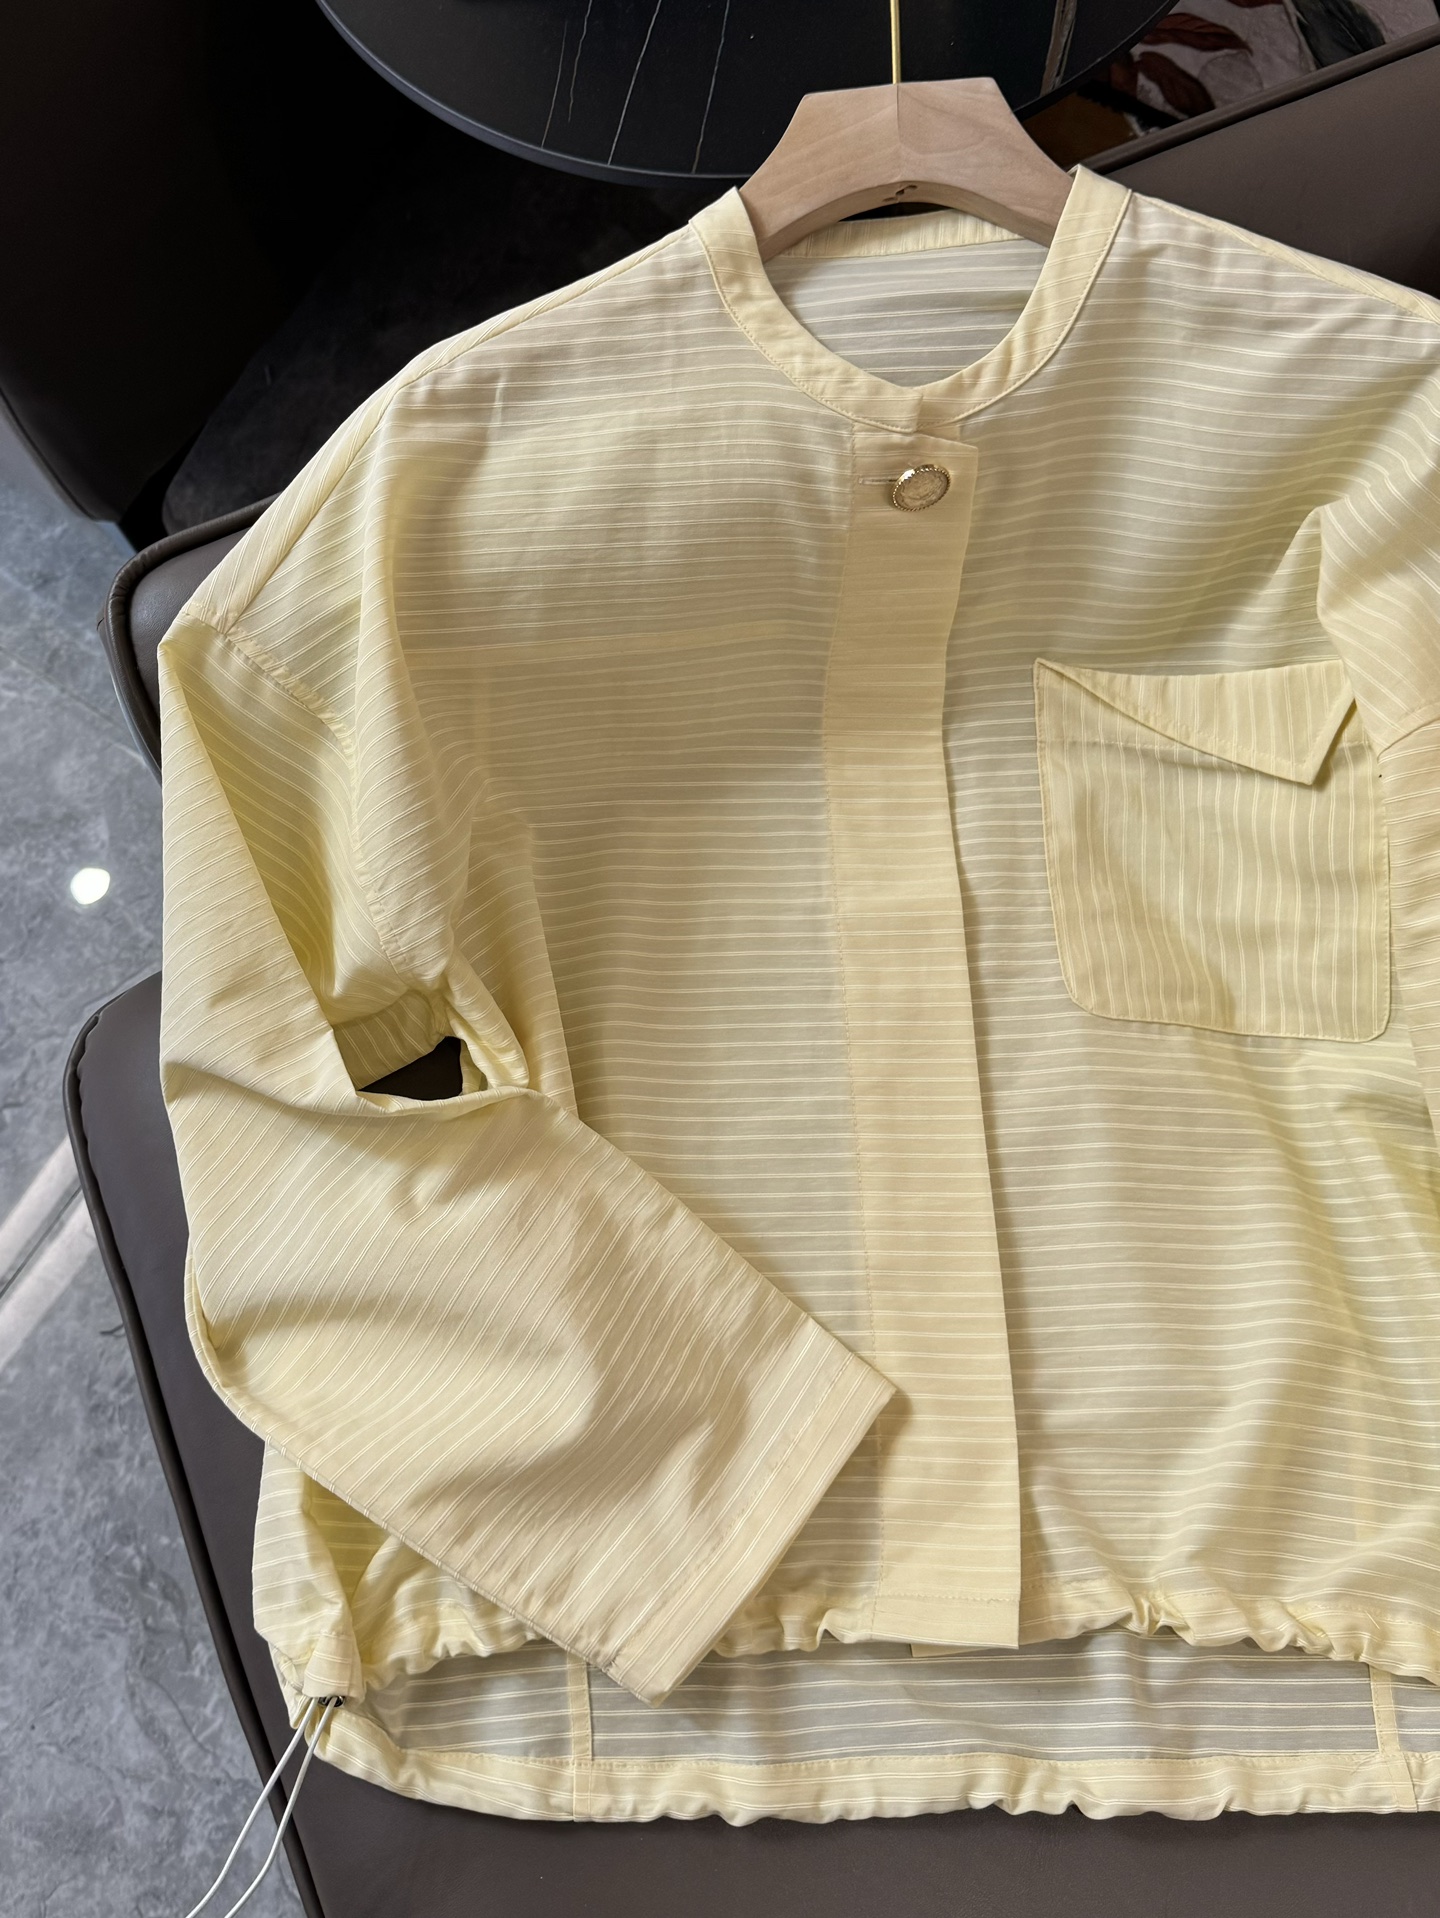 YJ009#新款衬衫原创设计大厂货条纹长袖衬衫淡黄色SML